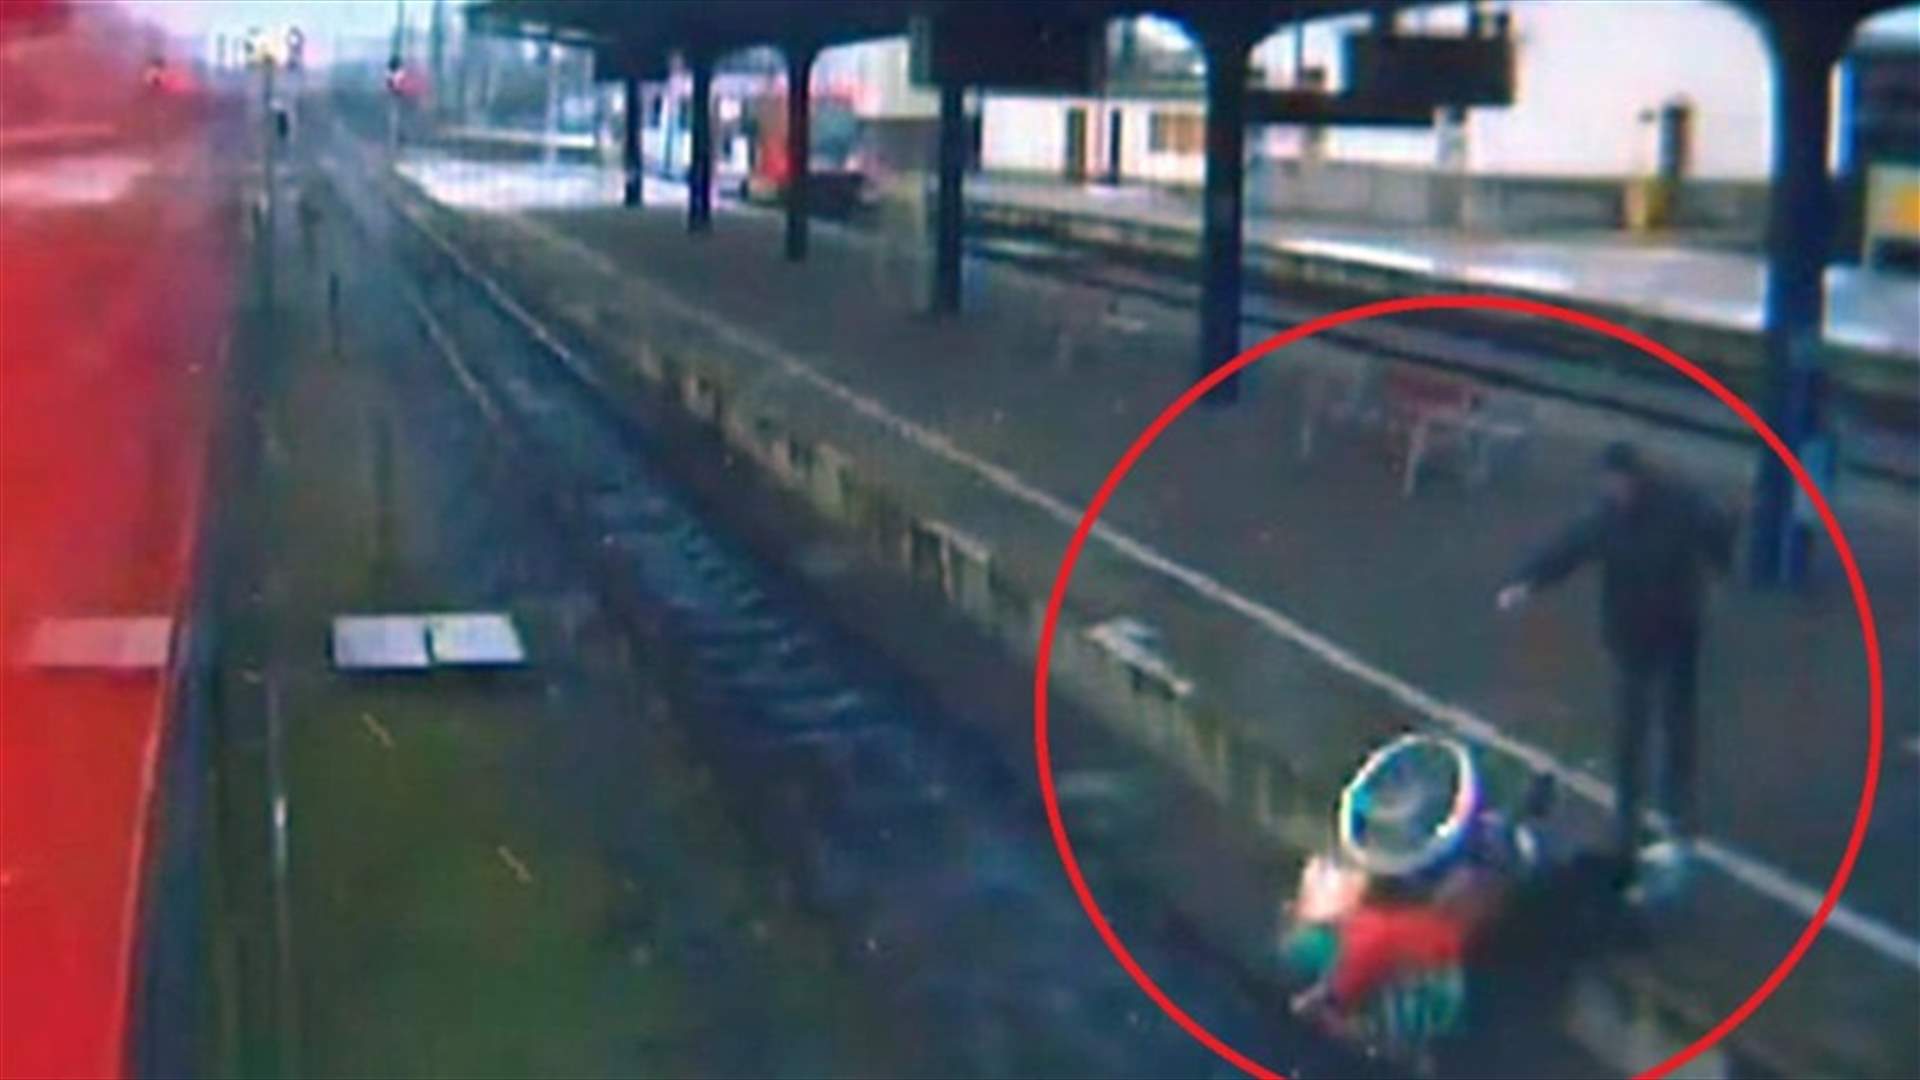 بالفيديو: شاب يدفع امرأة سبعينيّة على كرسيها المتحرّك نحو سكّة القطار!